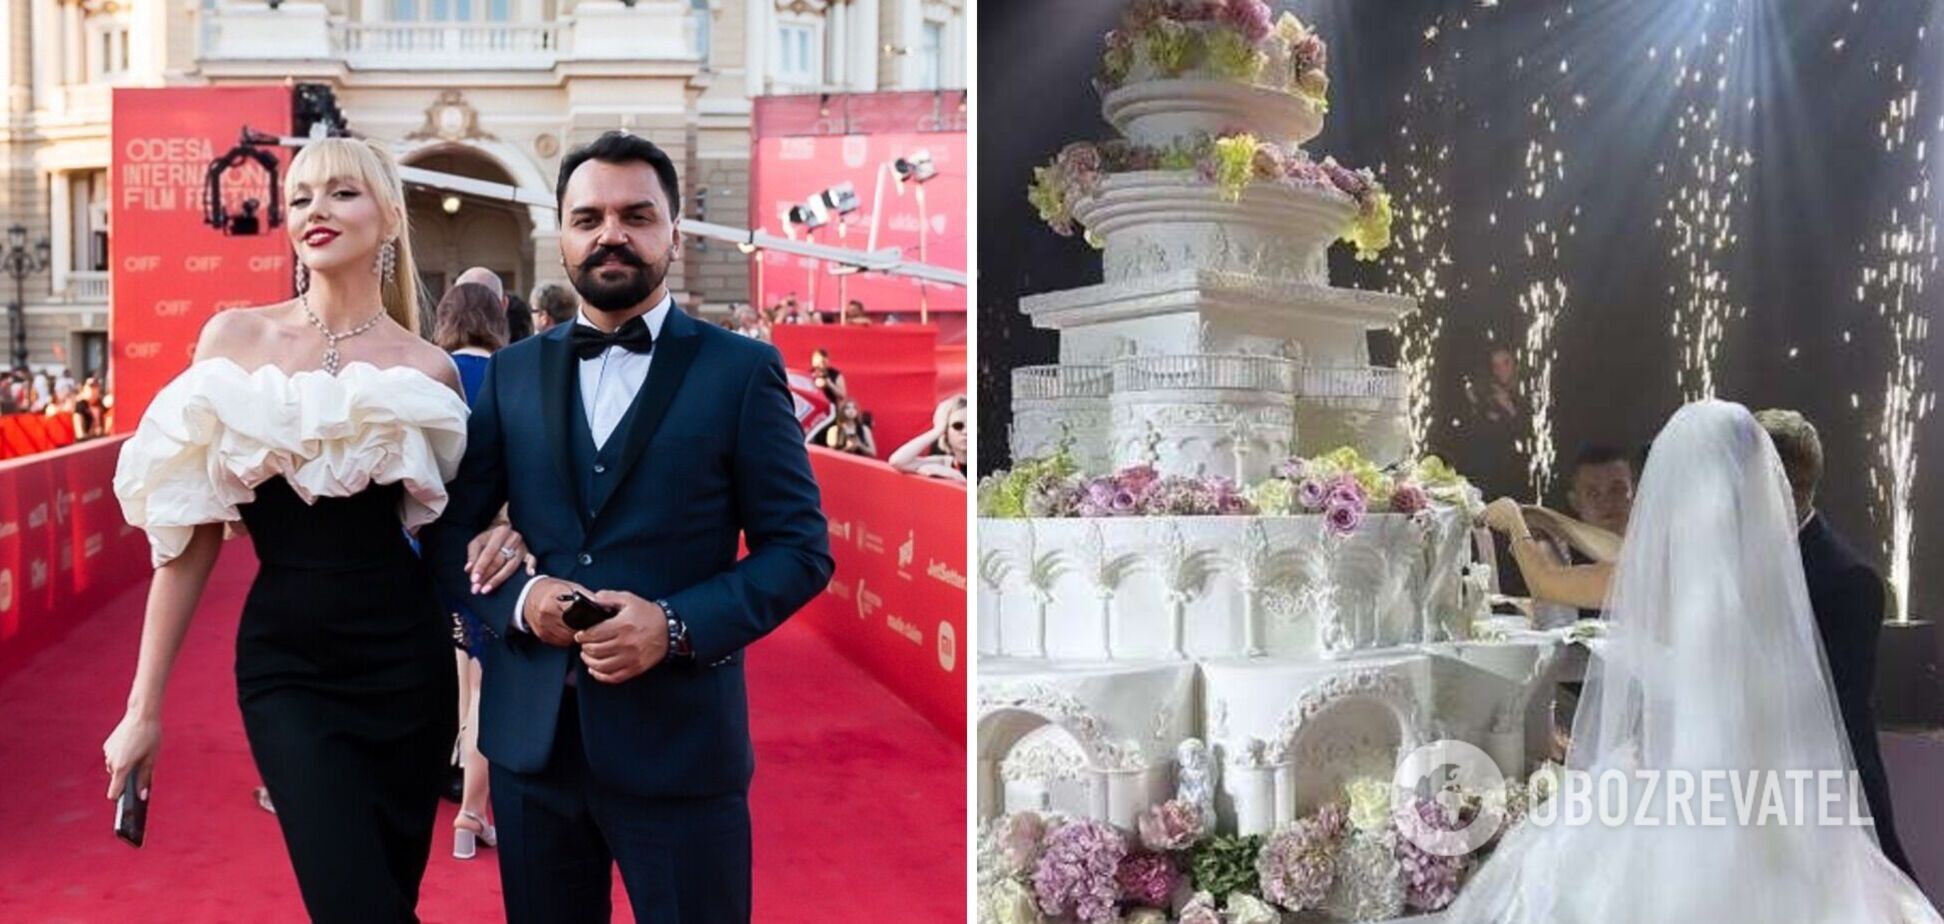 Продюсер Поляковой заявил, что торт за 100 тыс. грн на скандальной свадьбе во Львове был пластиковым.